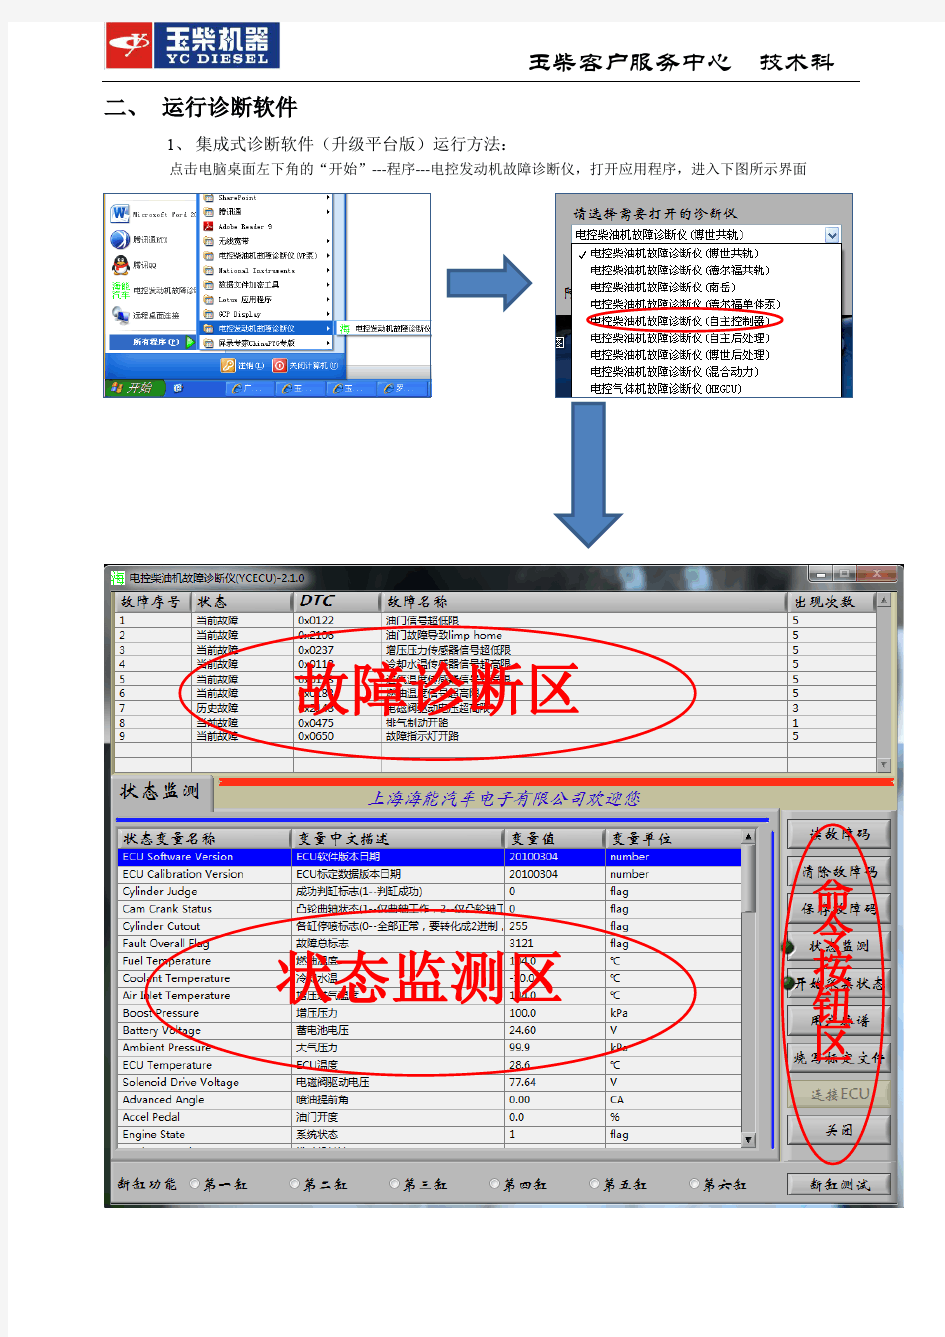 YCECU自主控制器诊断软件使用说明书-20140305